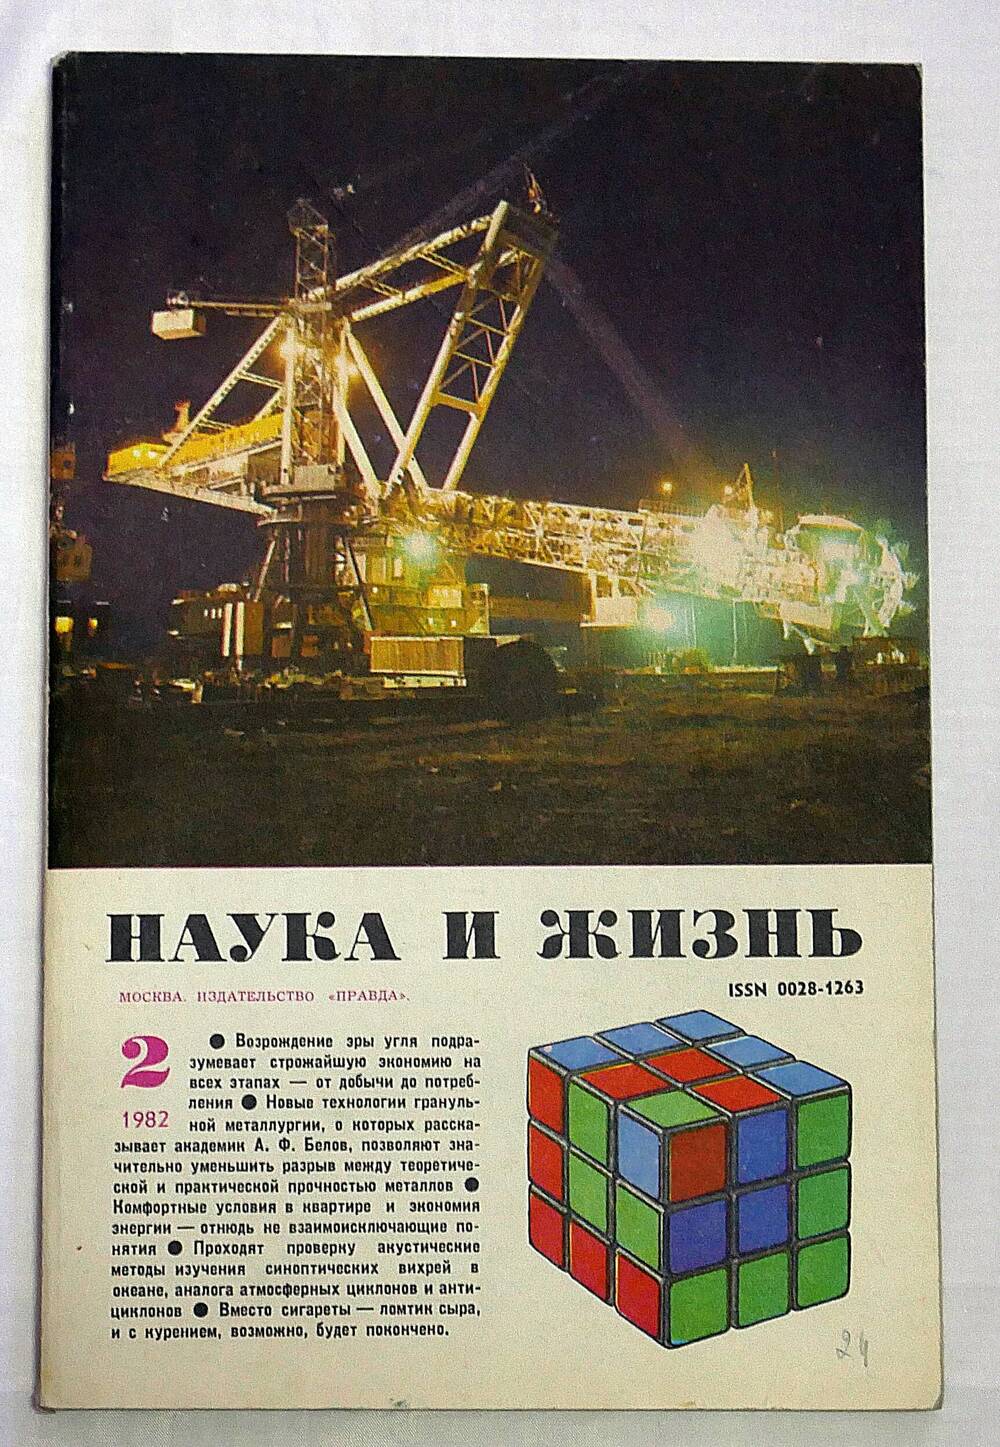 Журнал. Наука и жизнь. № 2 февраль 1982 г.